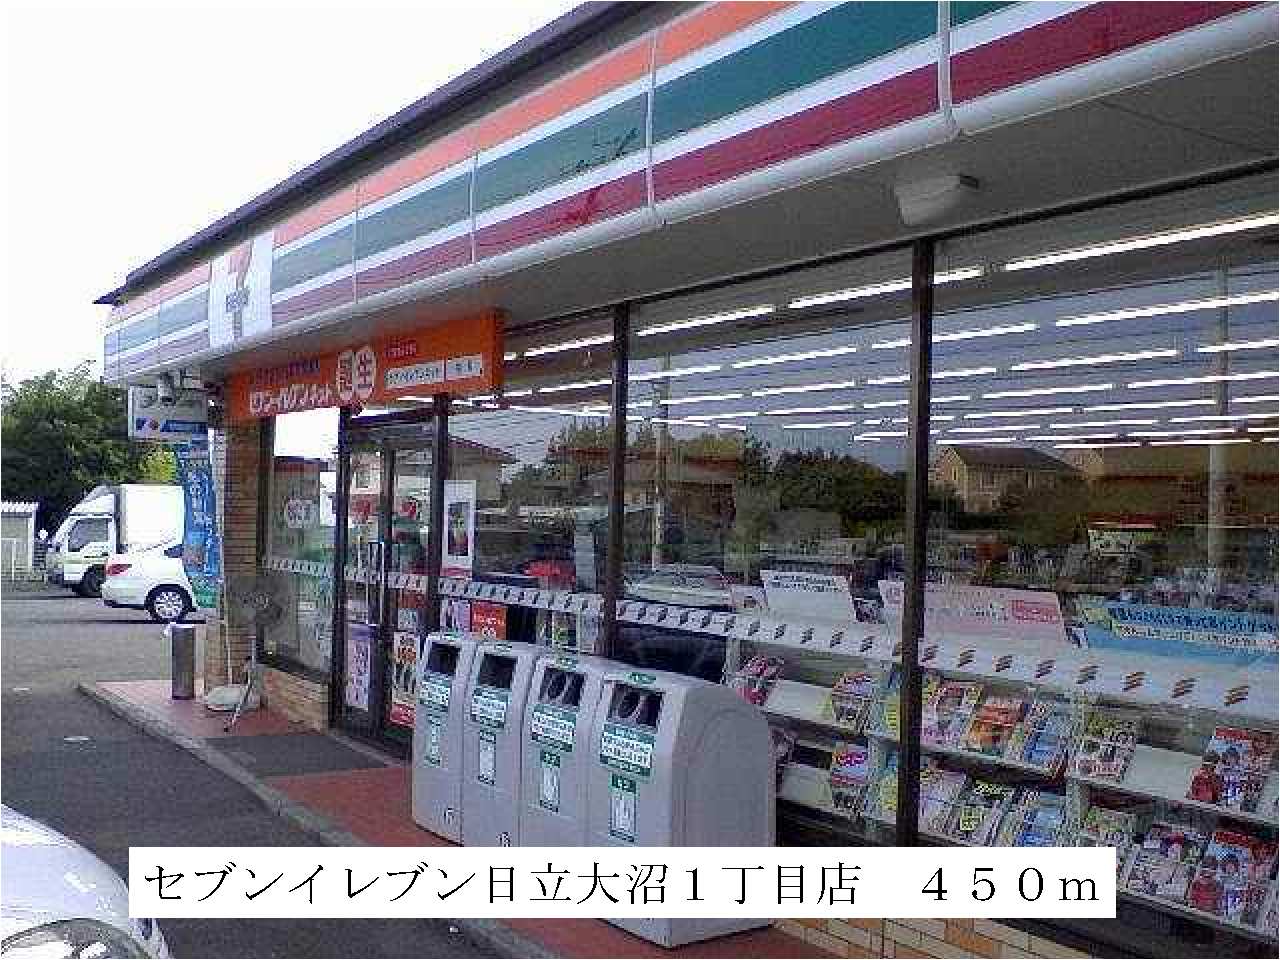 Convenience store. Seven-Eleven Hitachi Onuma 1-chome to (convenience store) 450m